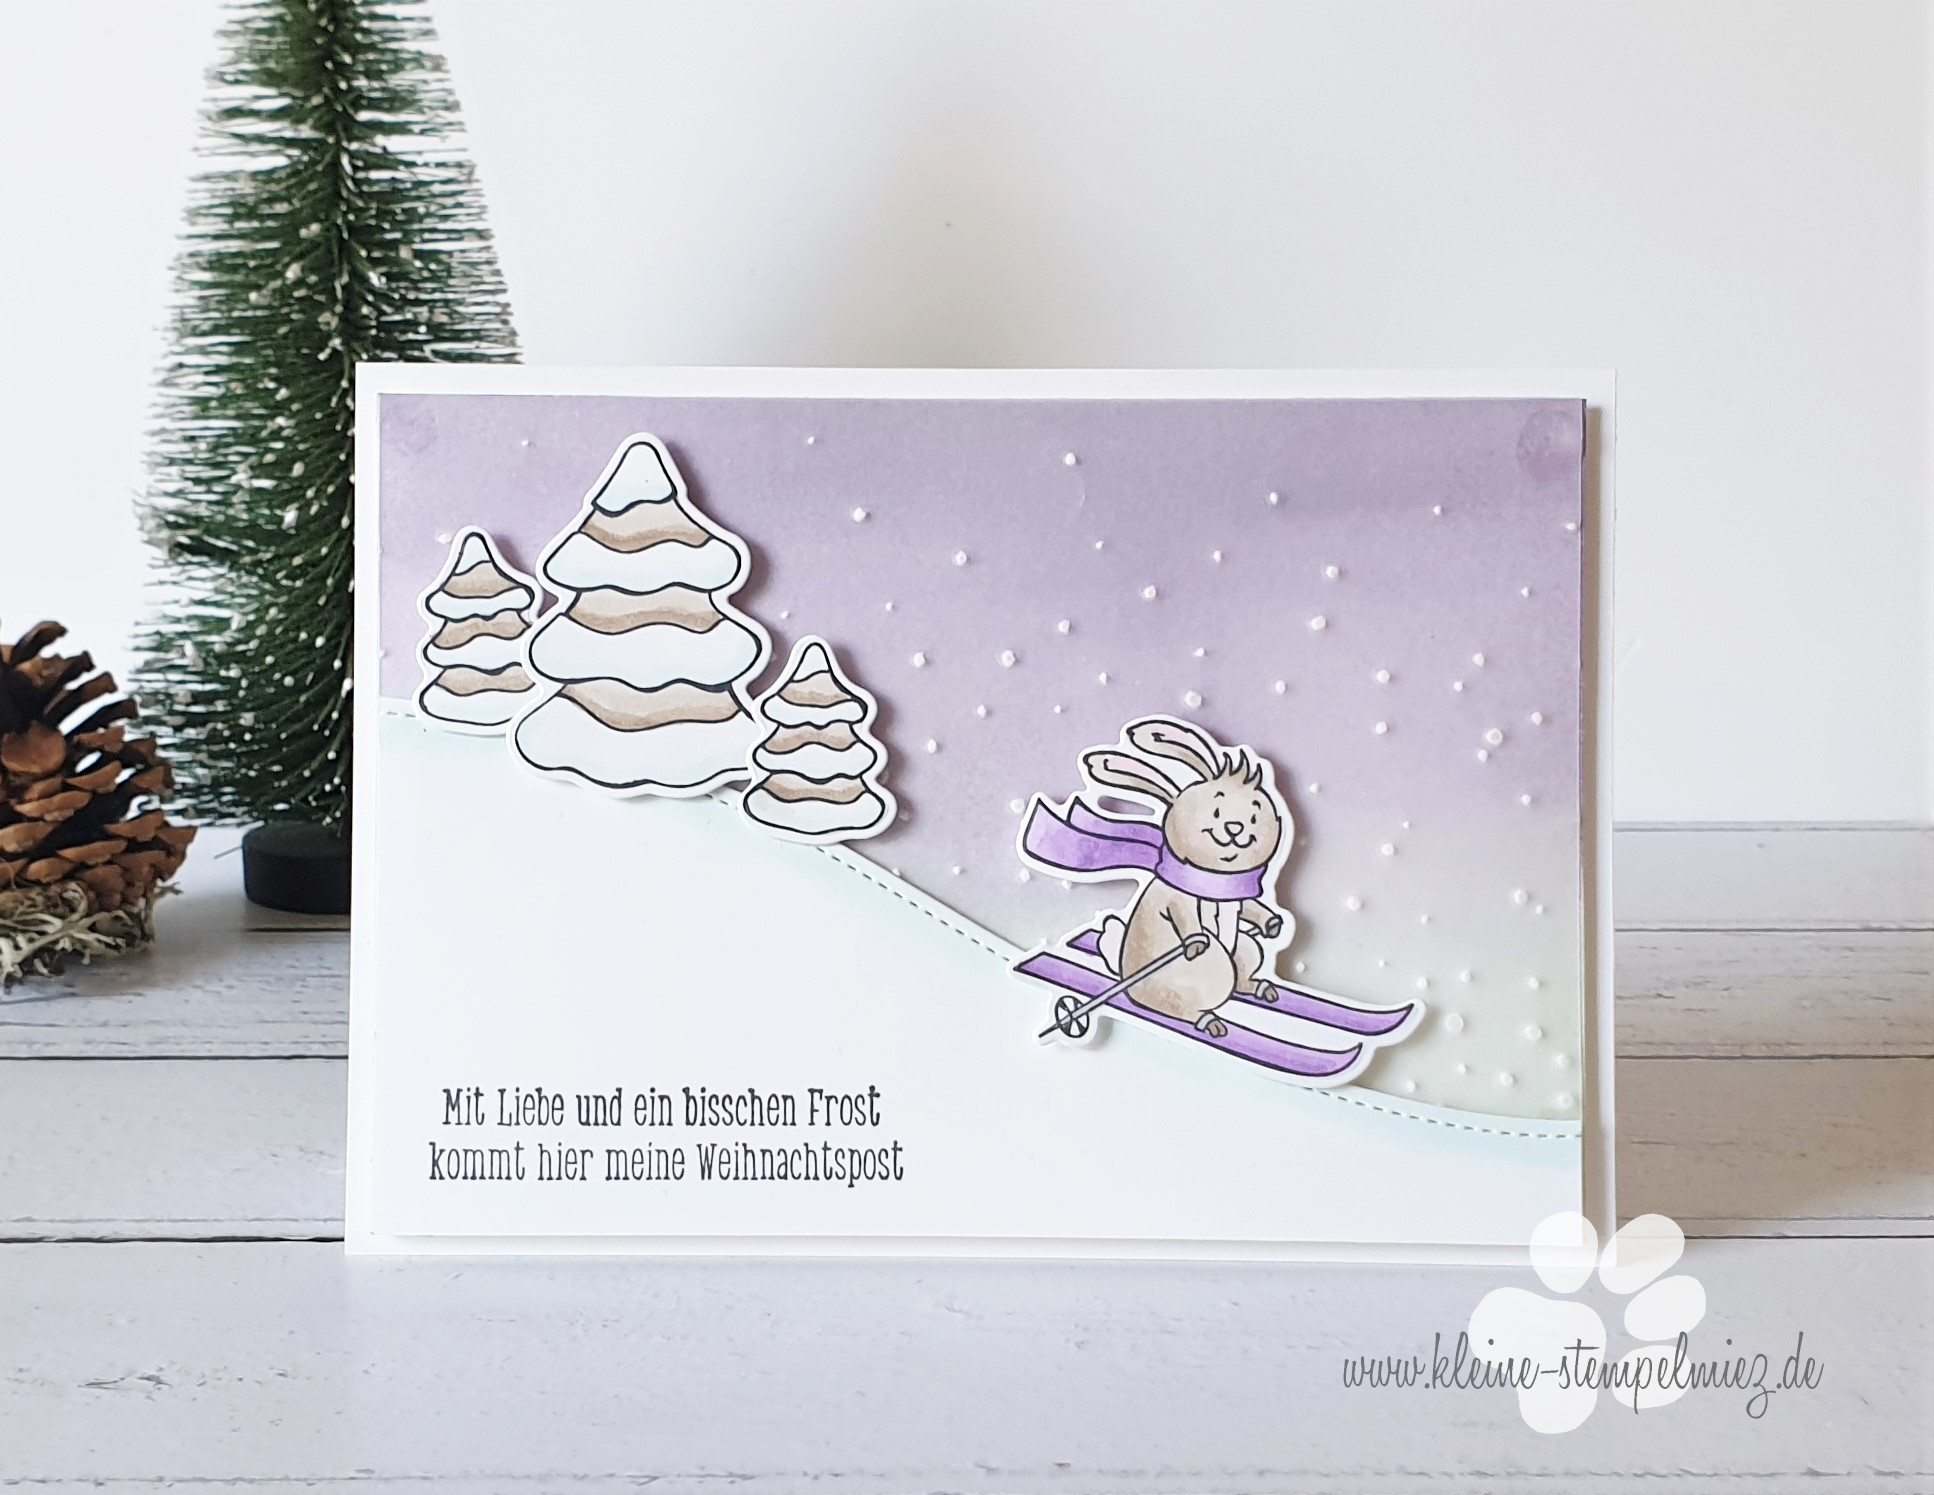 Sneak Peek Woche Winterkatalog – Tag 1 “Weihnachtskarte”